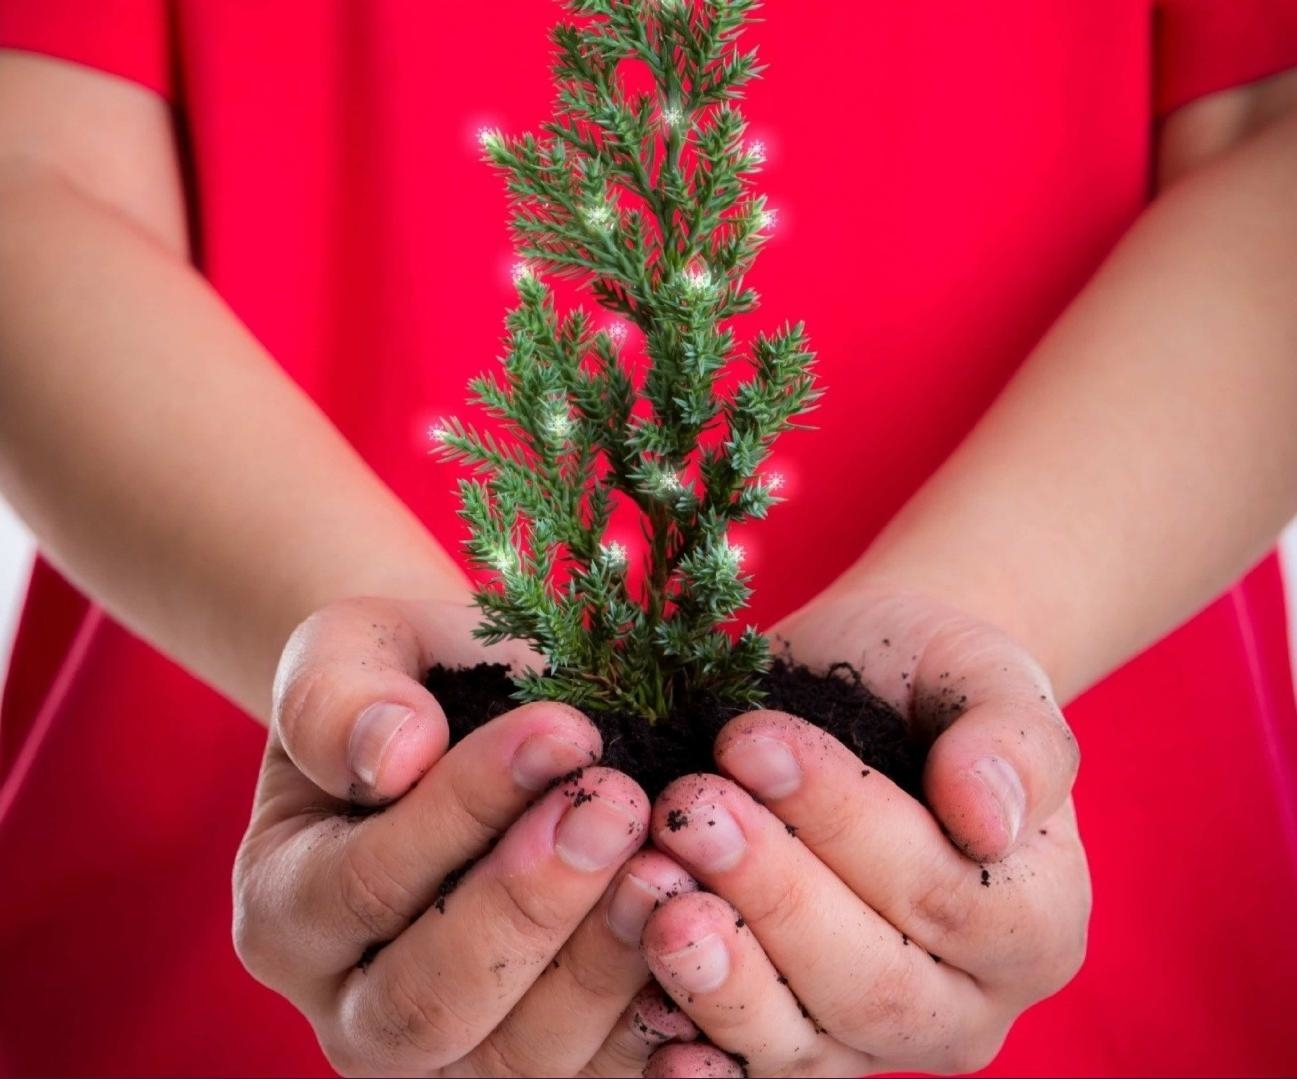 Vianočné sviatky predstavujú nadmernú záťaž pre životné prostredie a klímu